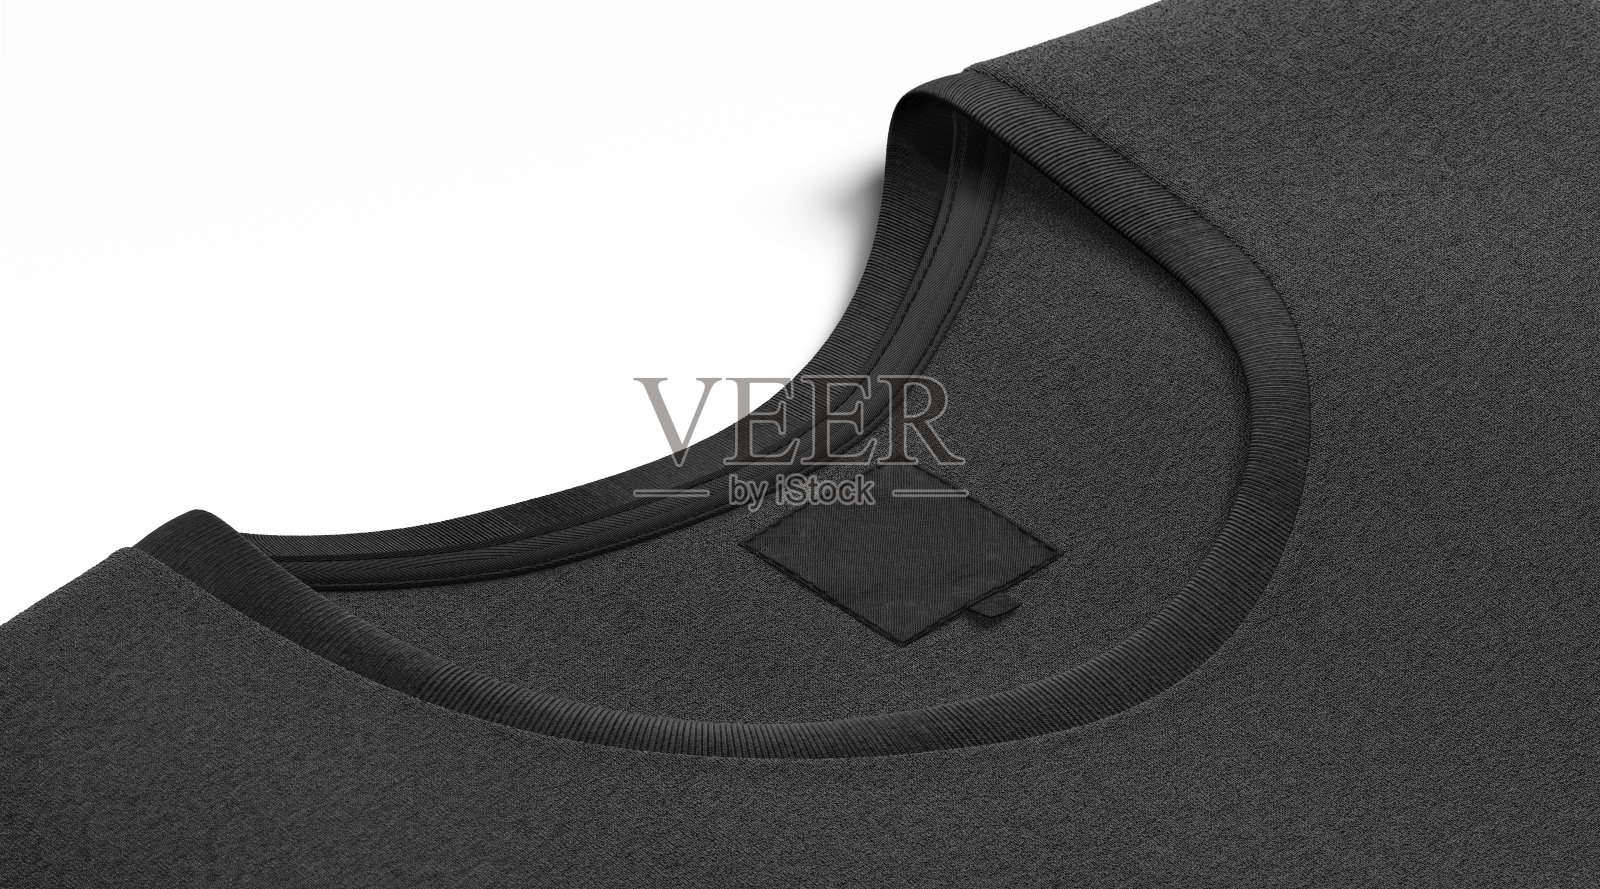 空白的黑色t恤领与方形标签模拟起来照片摄影图片